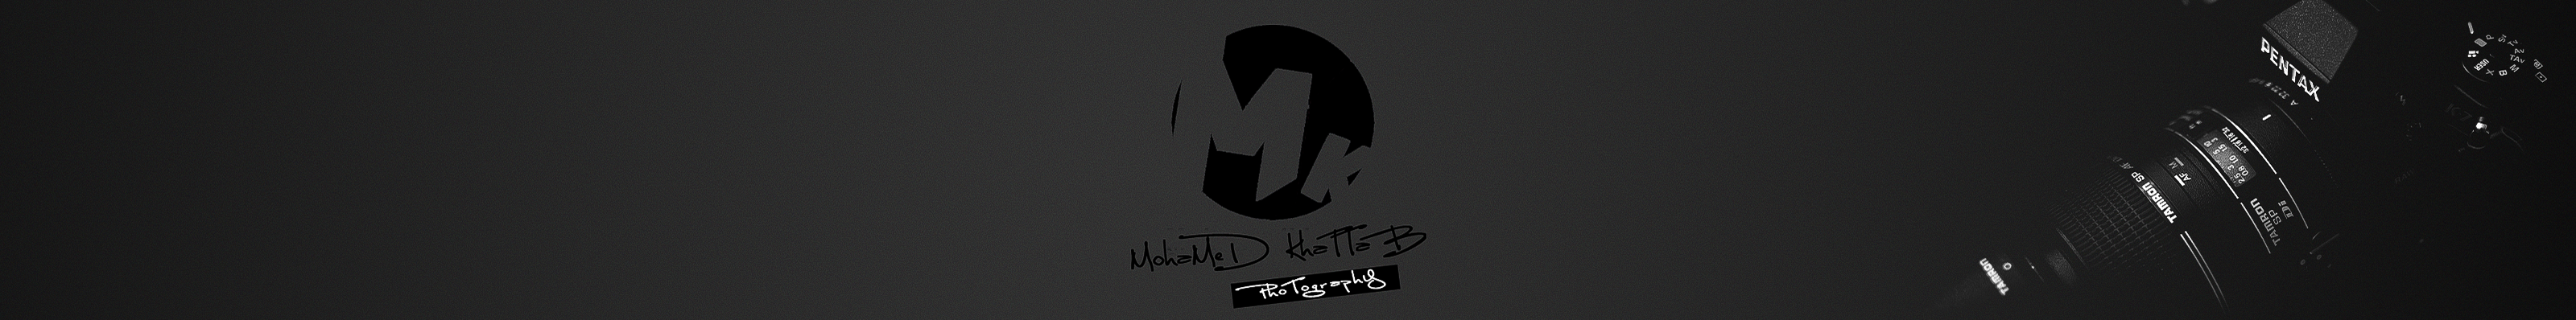 Mohamed Khattab's profile banner